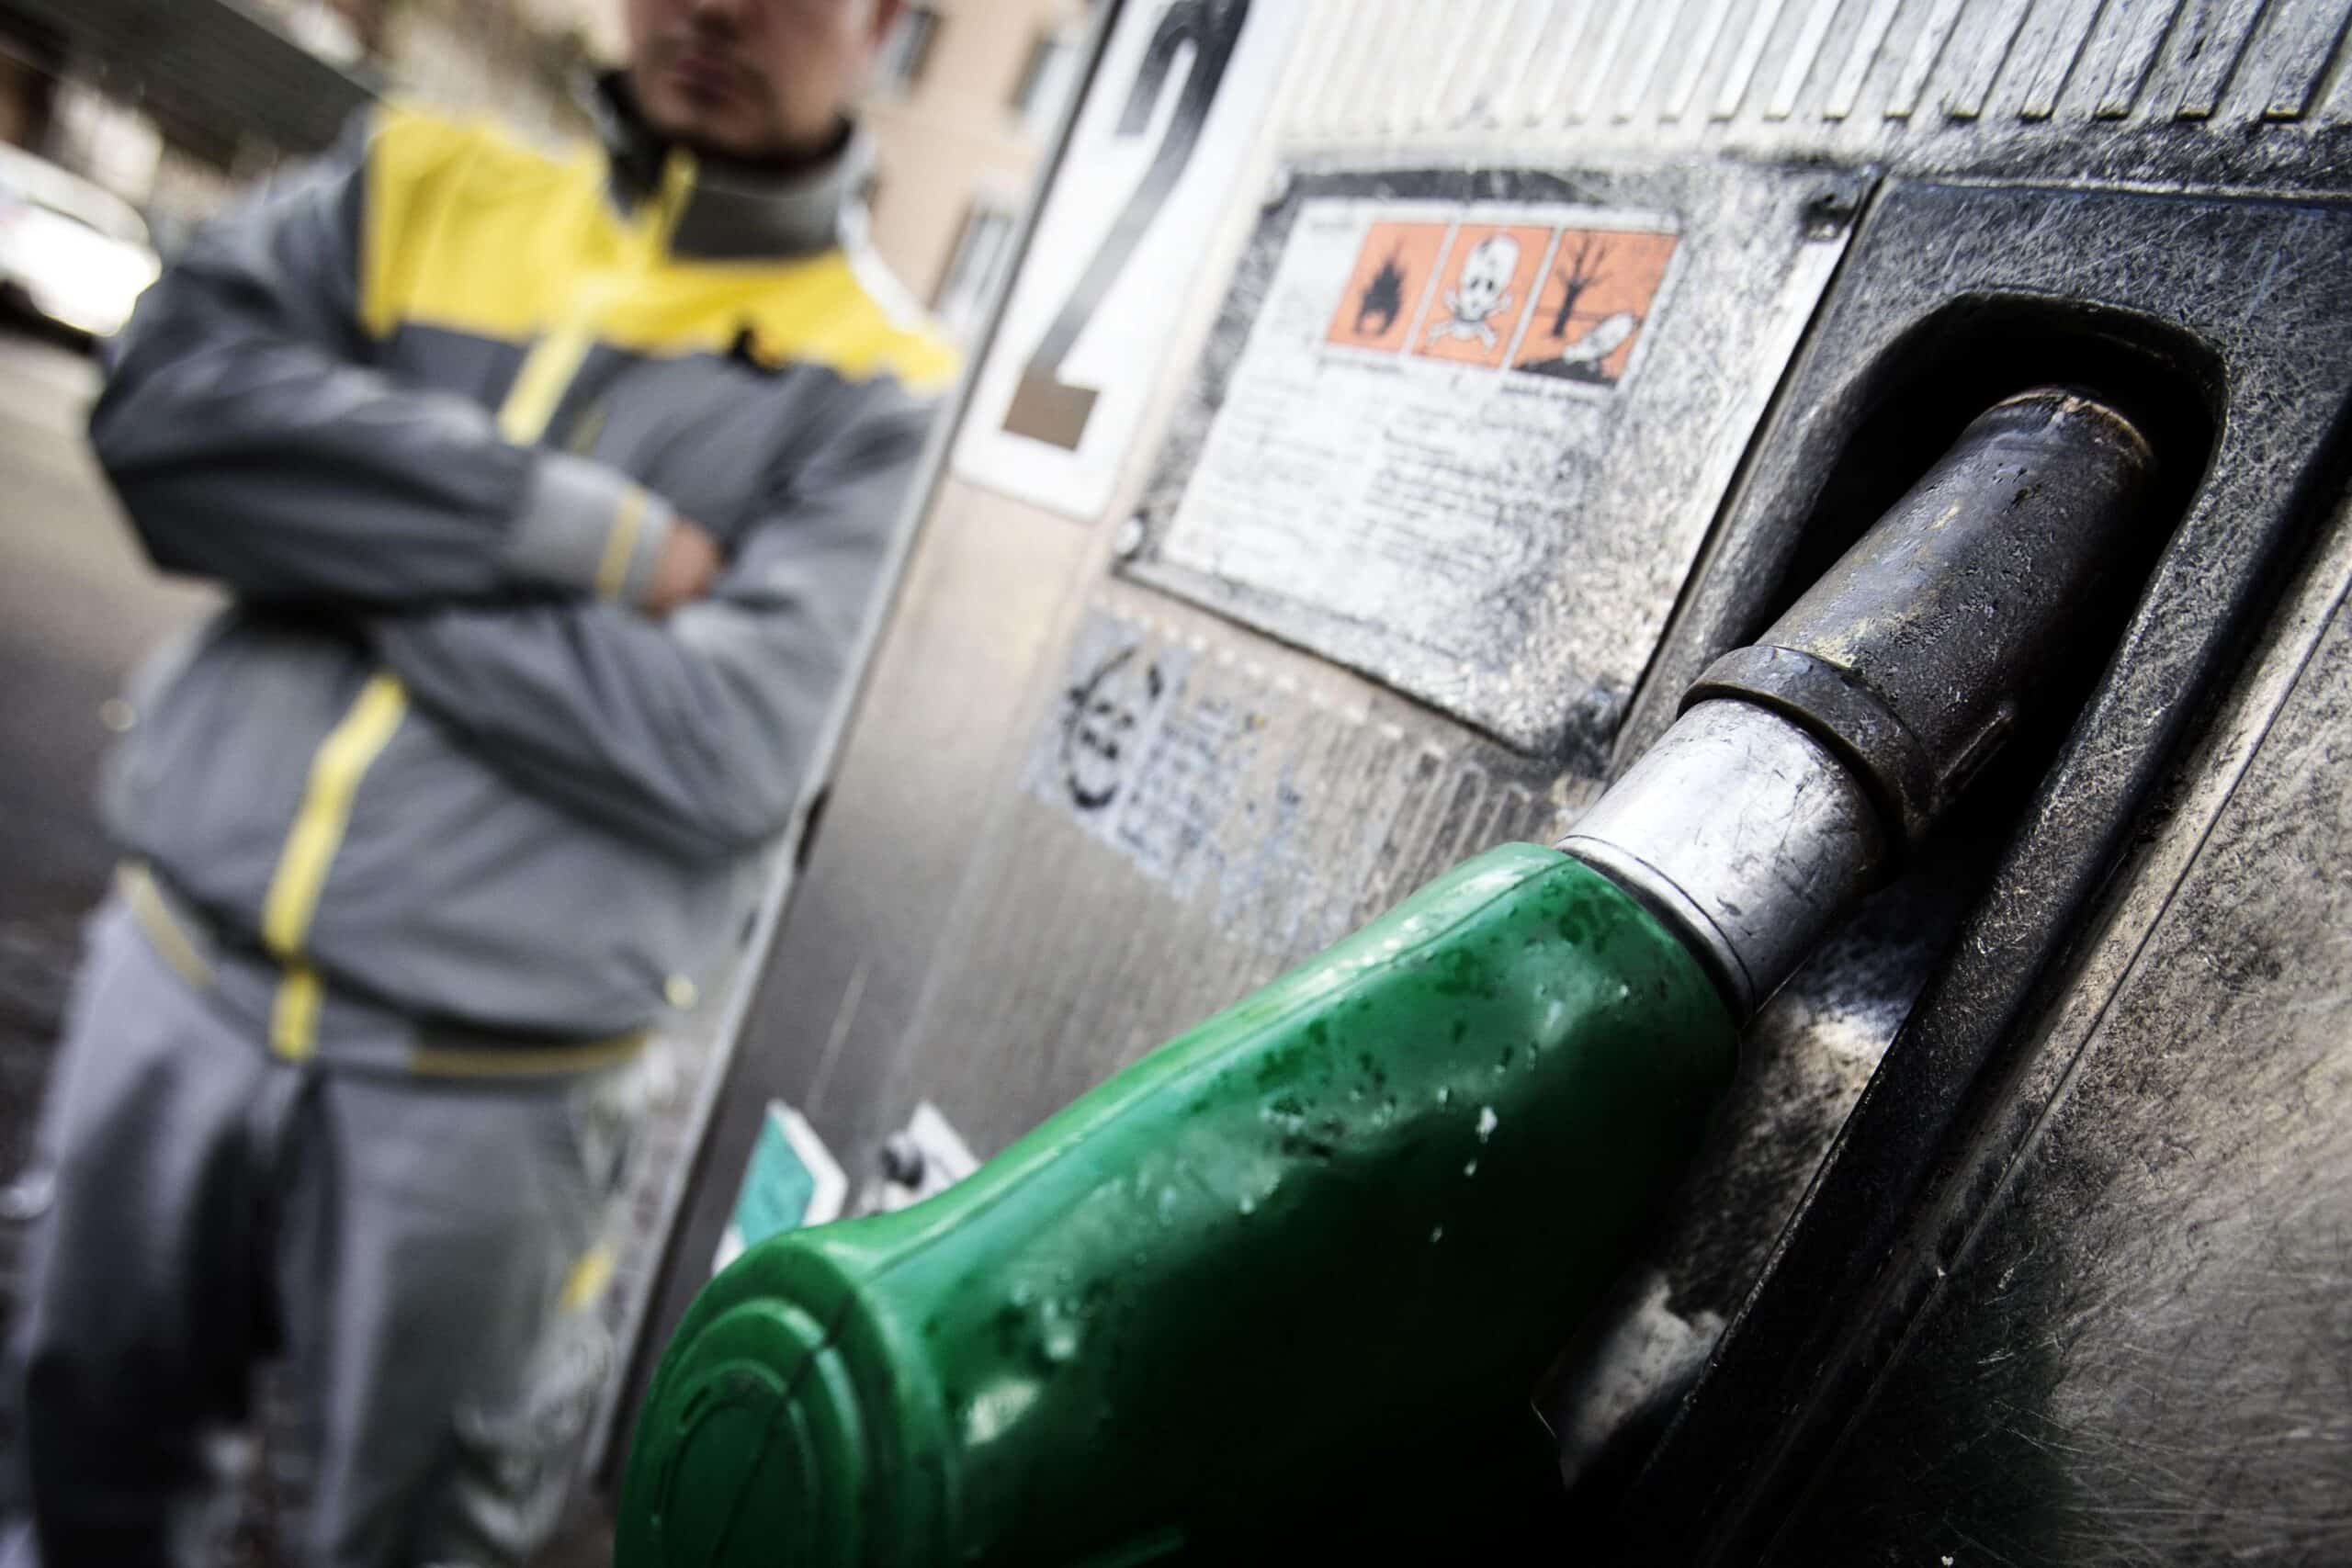 Allarme caro carburante: registrati nuovi rialzi sul prezzo di benzina e diesel. I dati forniti da Staffetta Quotidiana.